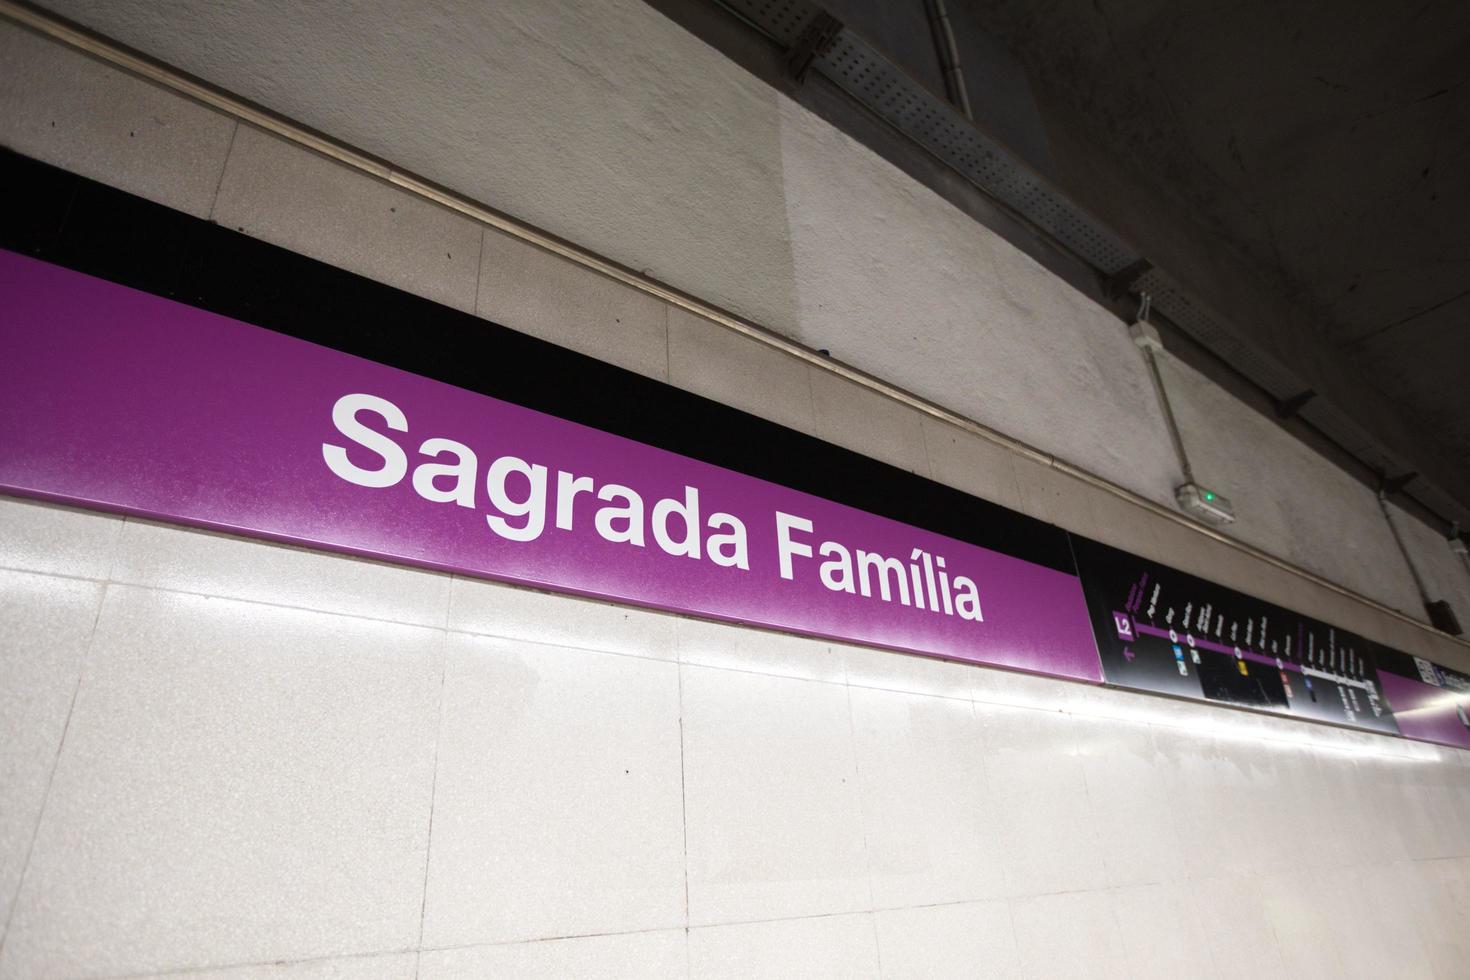 station de métro sagrada familia photo